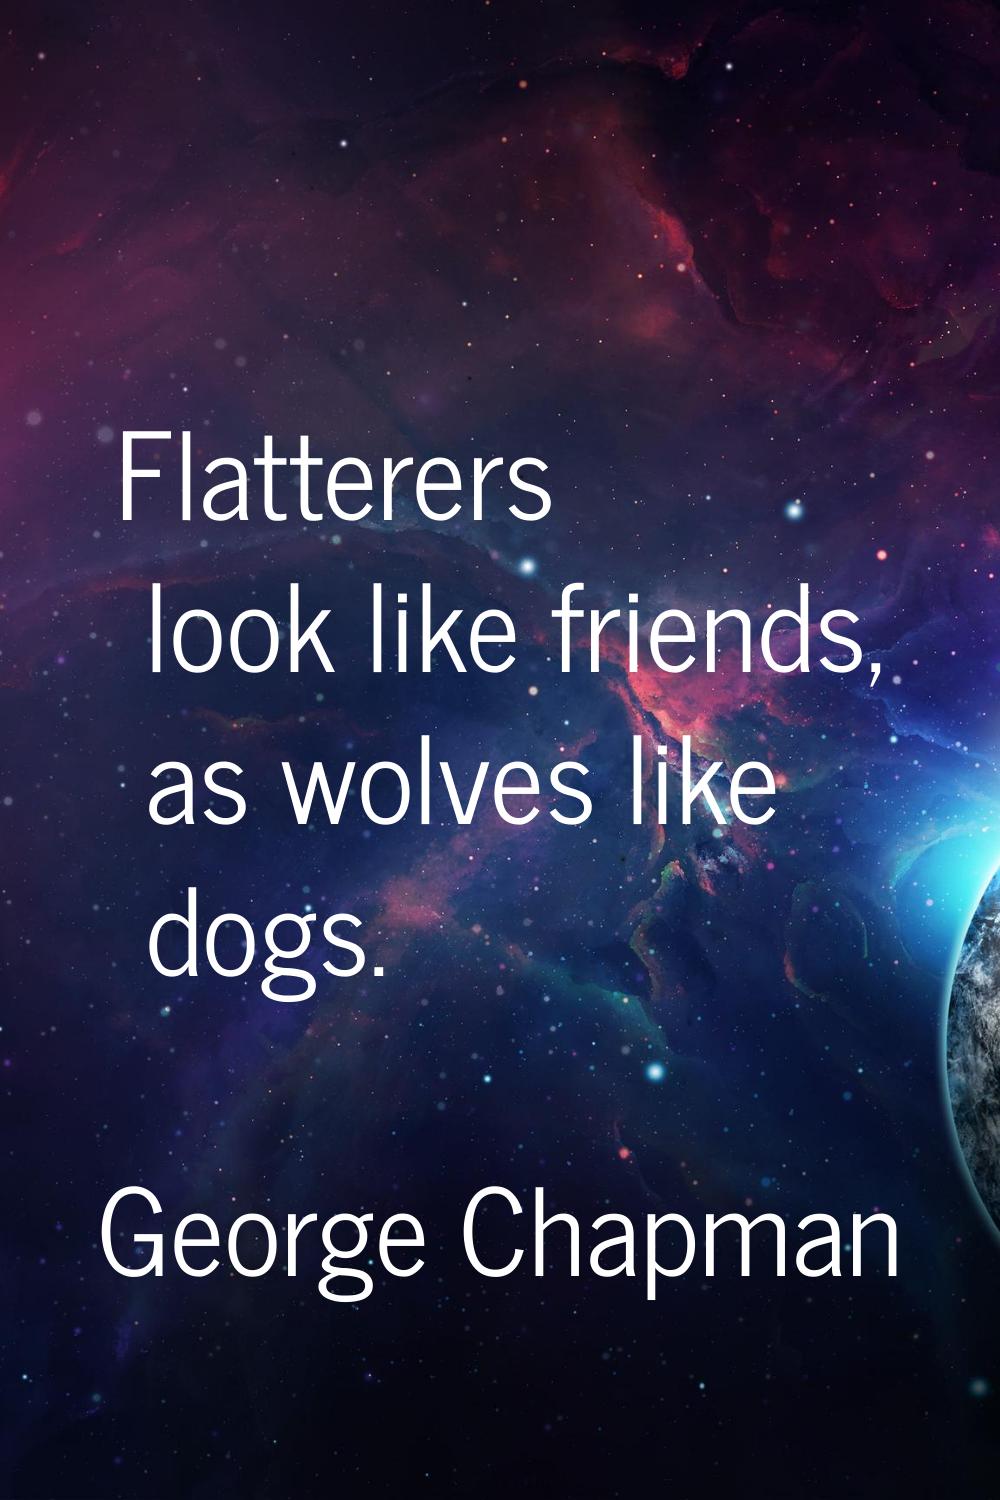 Flatterers look like friends, as wolves like dogs.